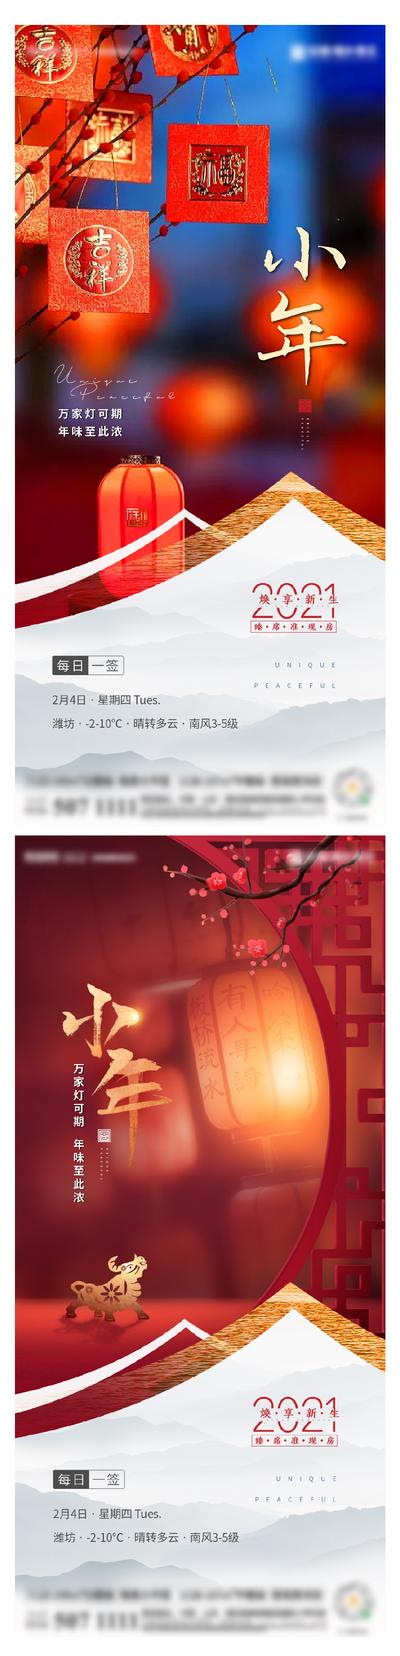 南门网 海报 中国传统节日 小年 花灯 灯笼 系列 